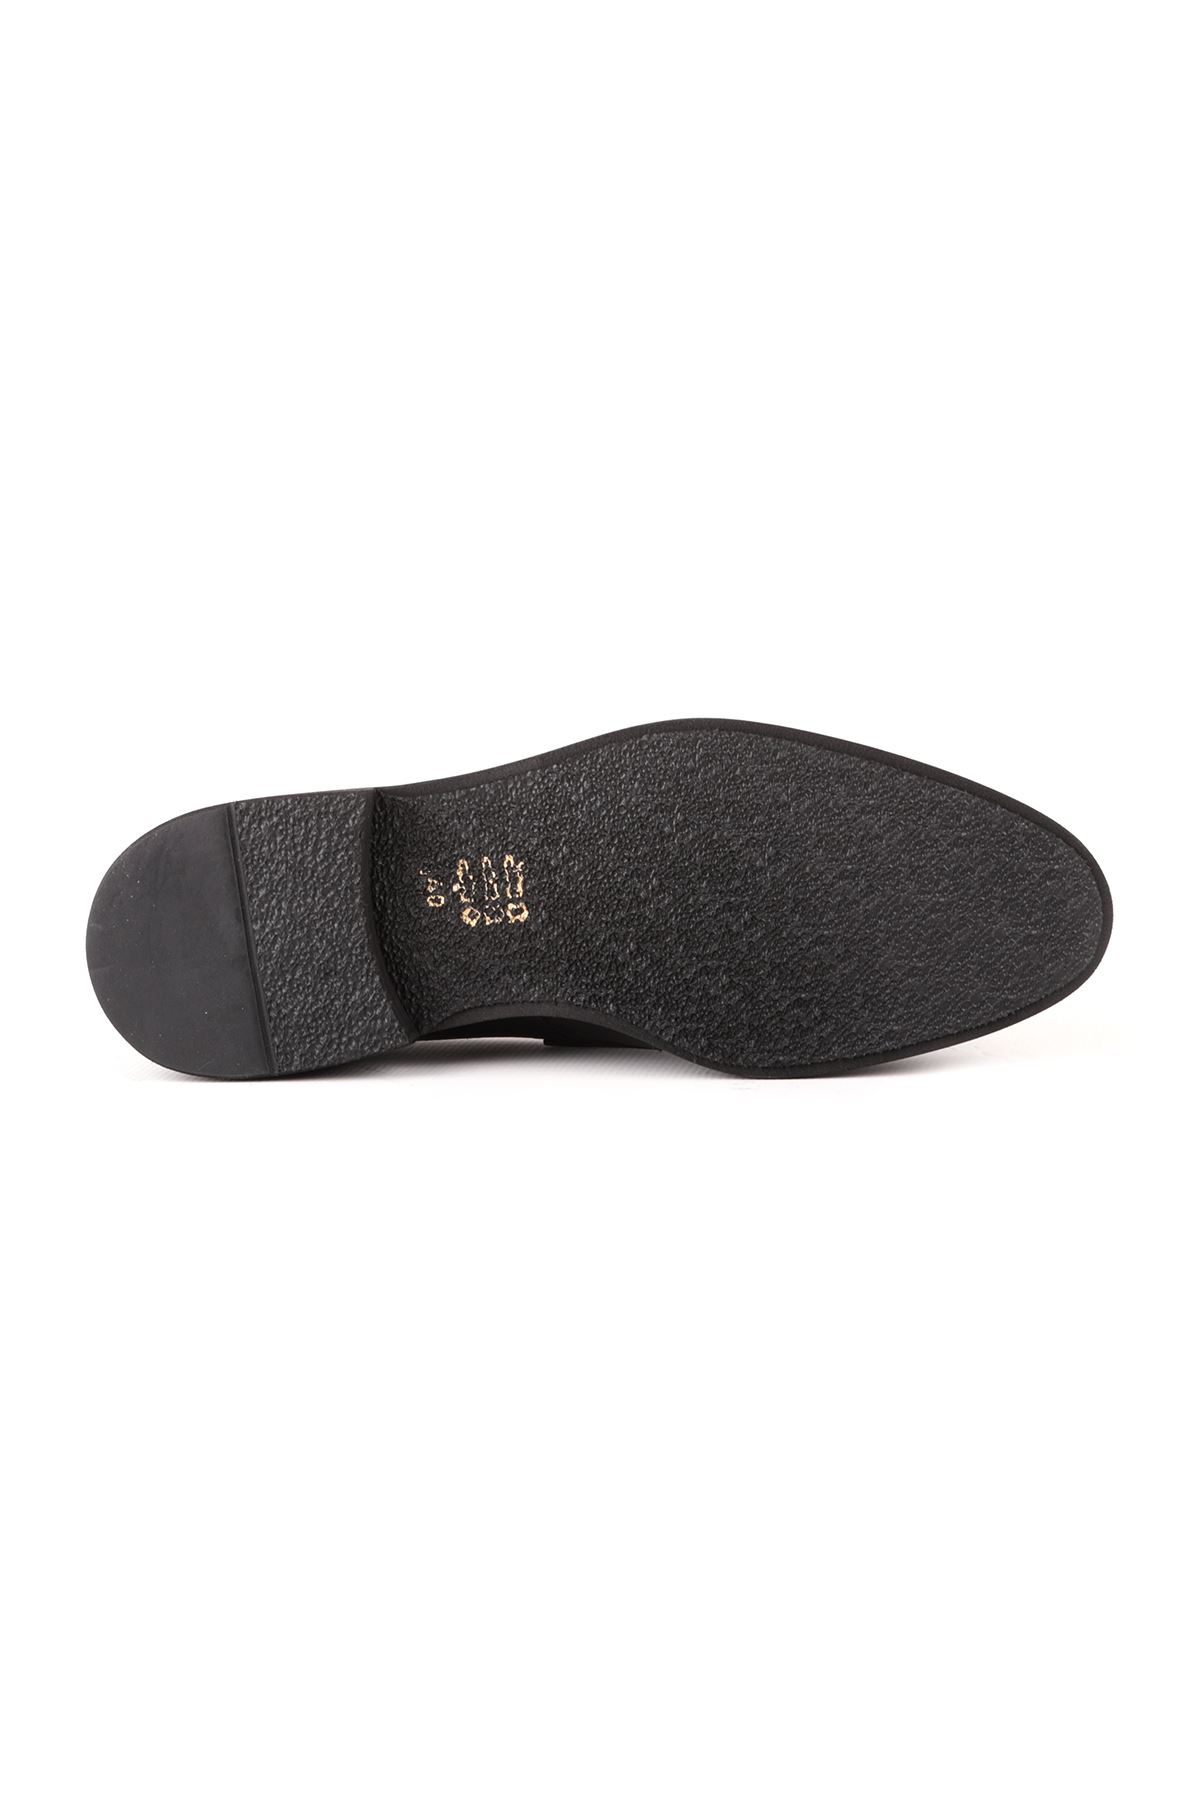 Libero L4779 Siyah Klasik Deri Erkek Ayakkabı